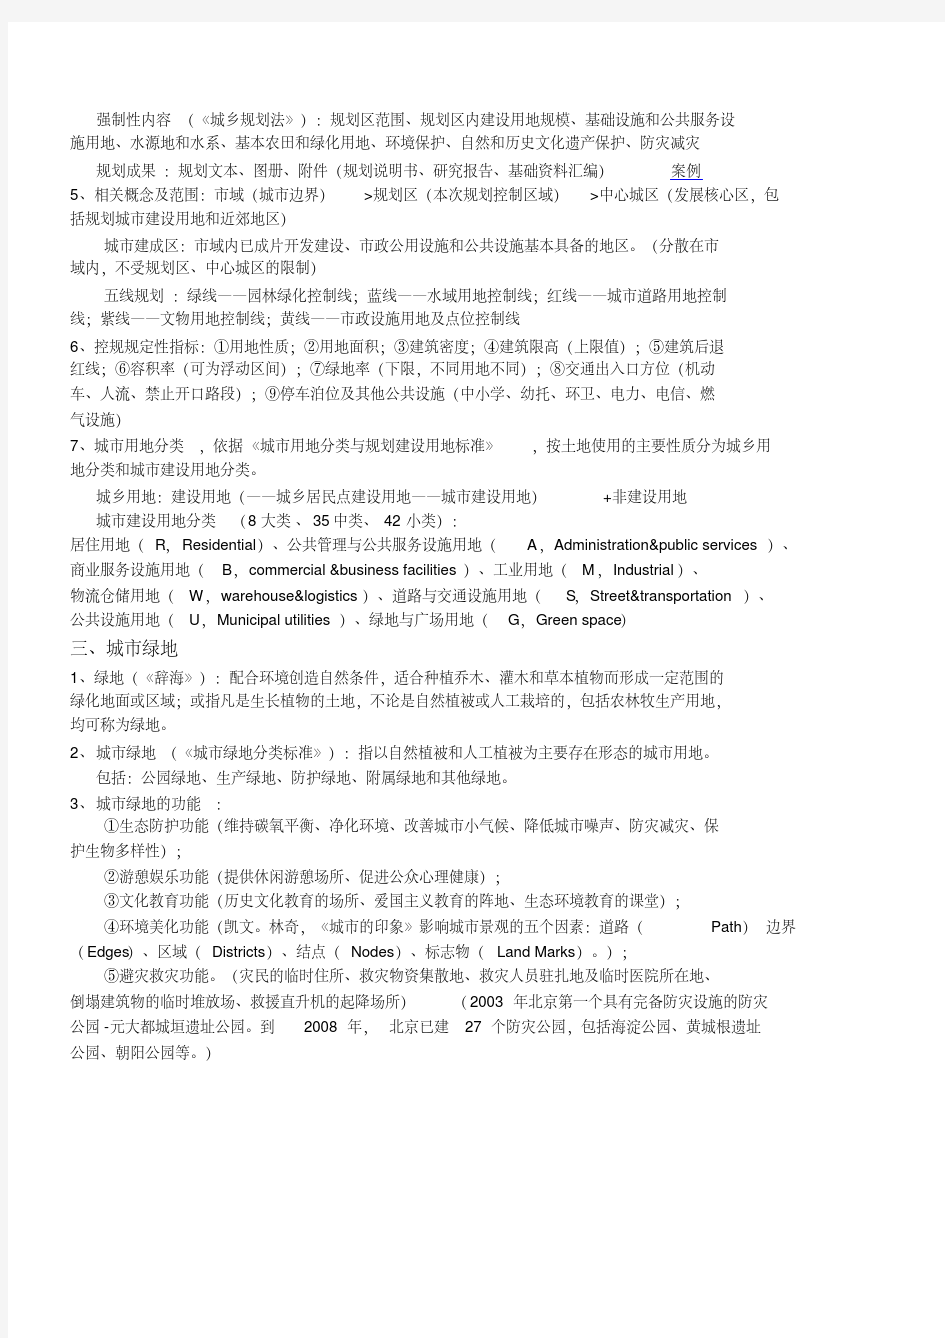 【笔记】城市园林绿地规划杨赉丽.pdf